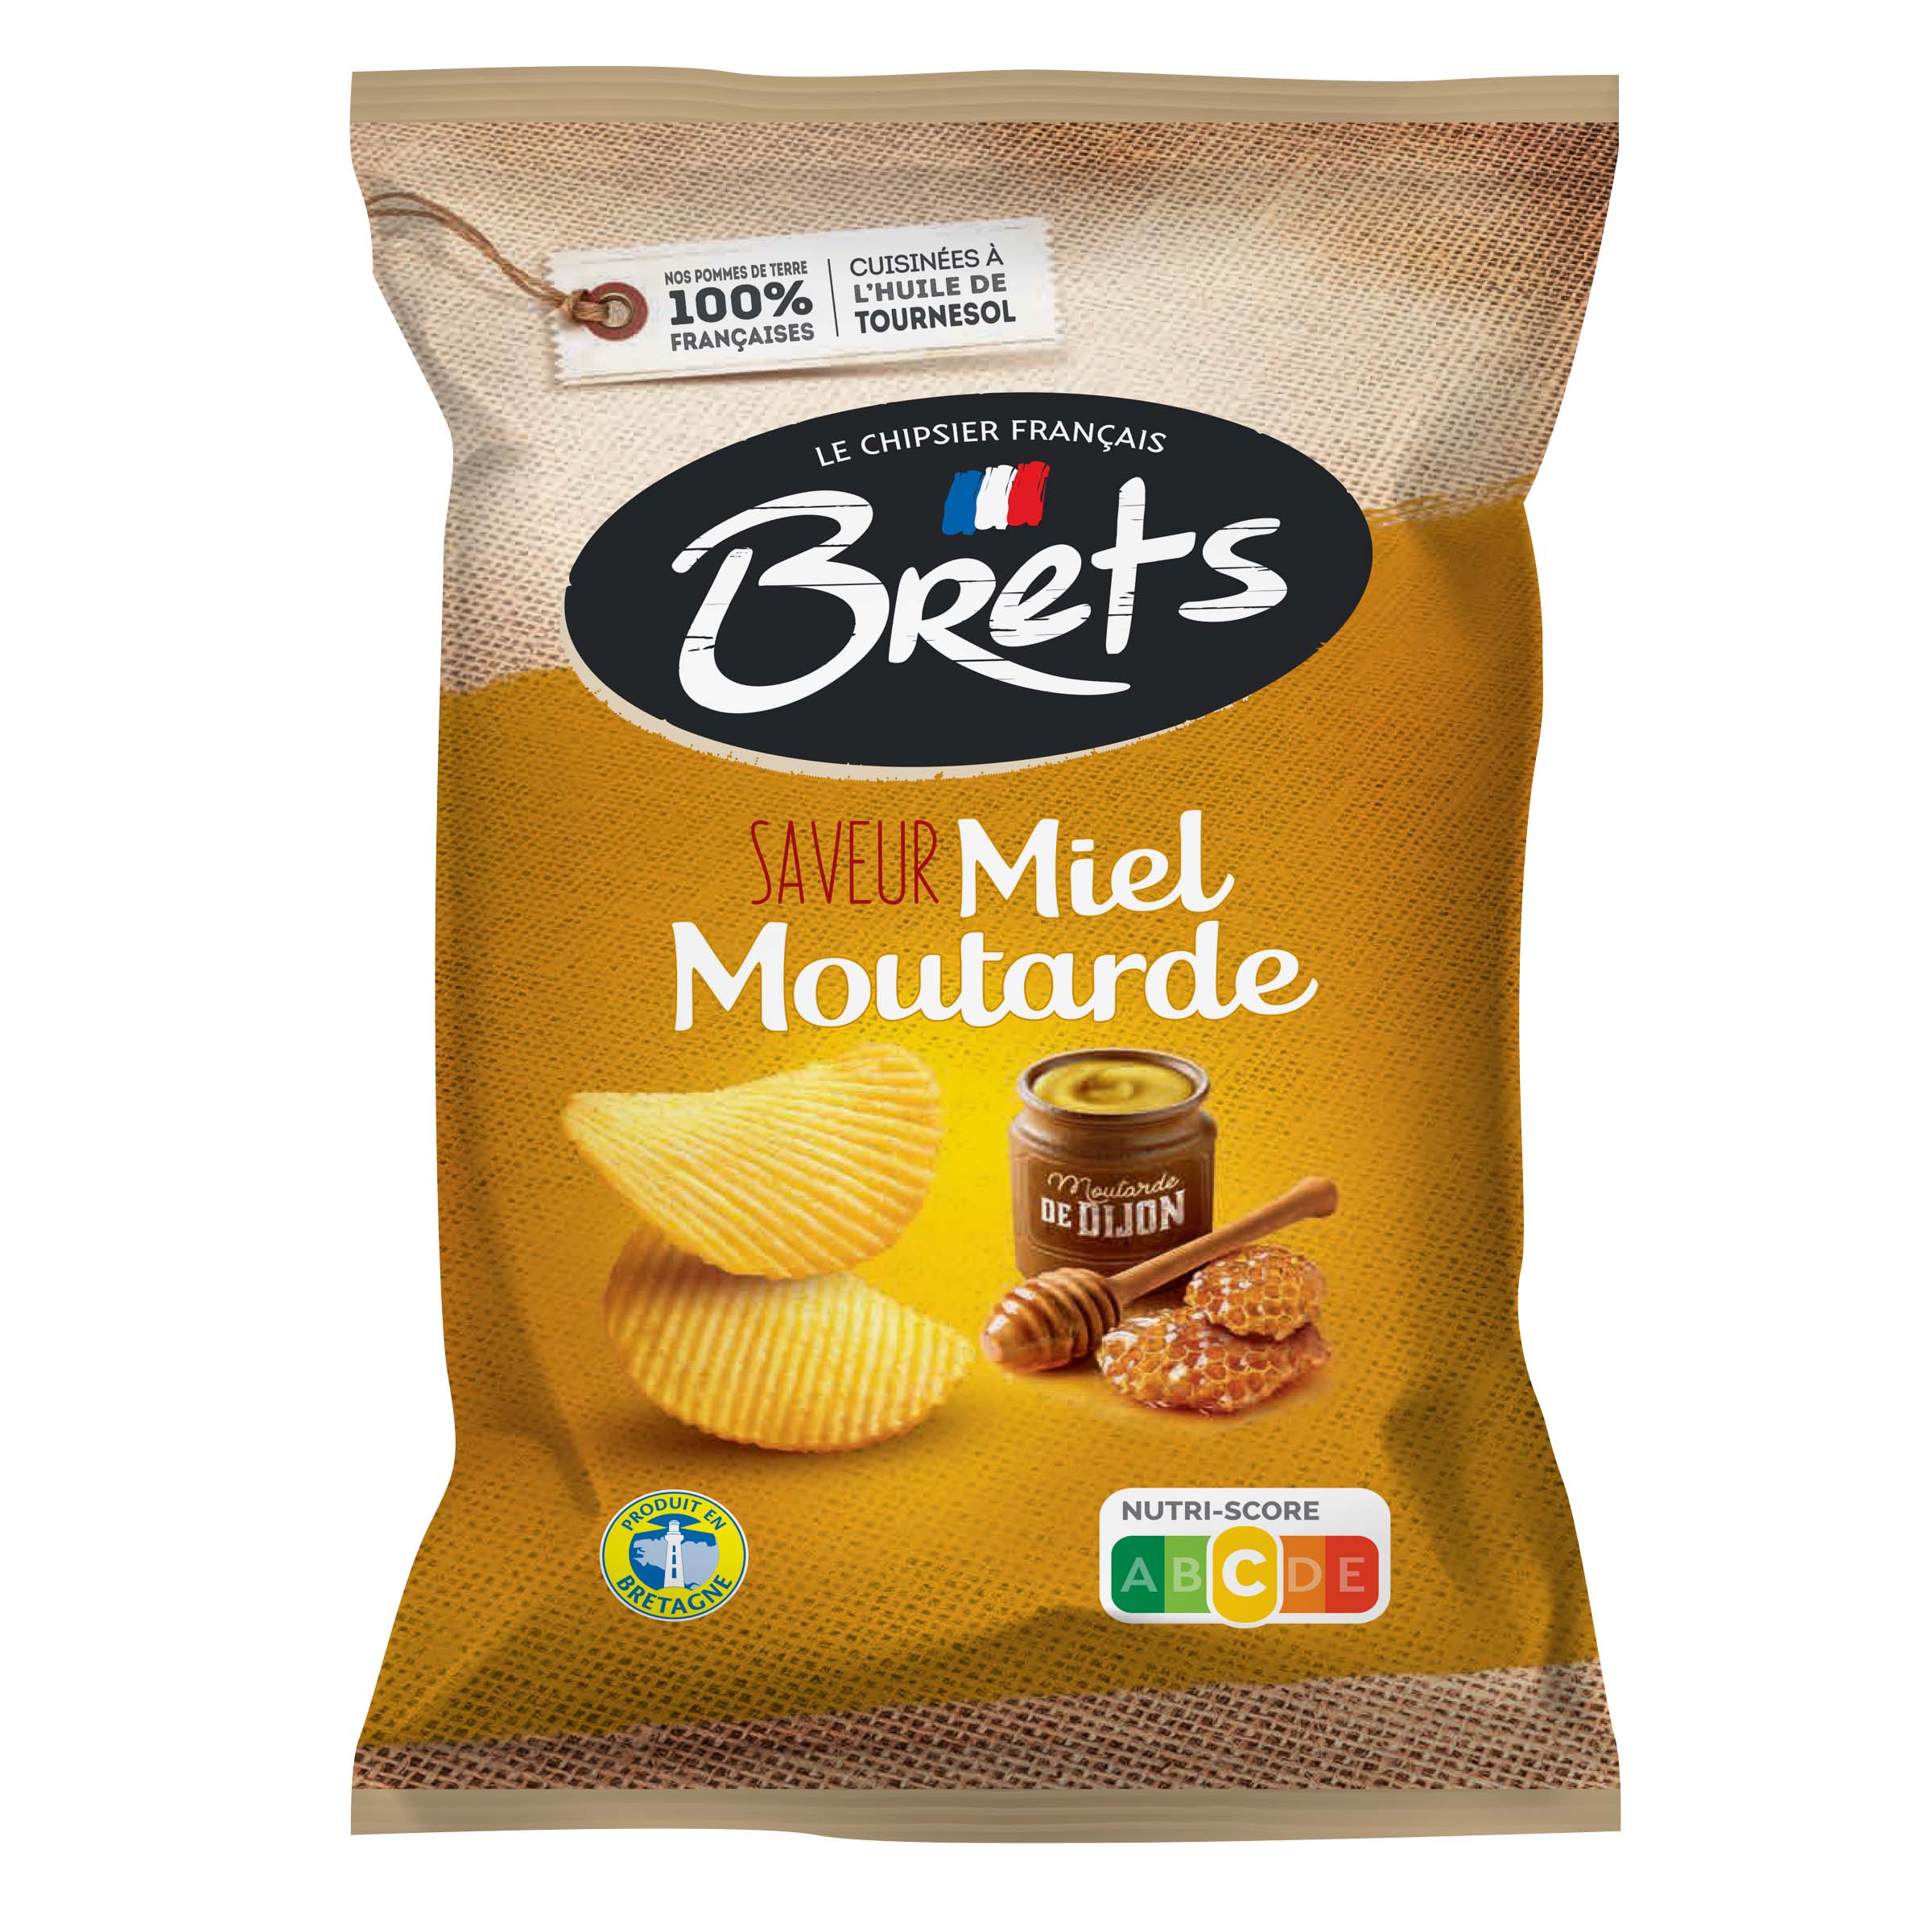 Chips Brets ondulées saveur Miel Moutarde - Bret's - Le chipsier